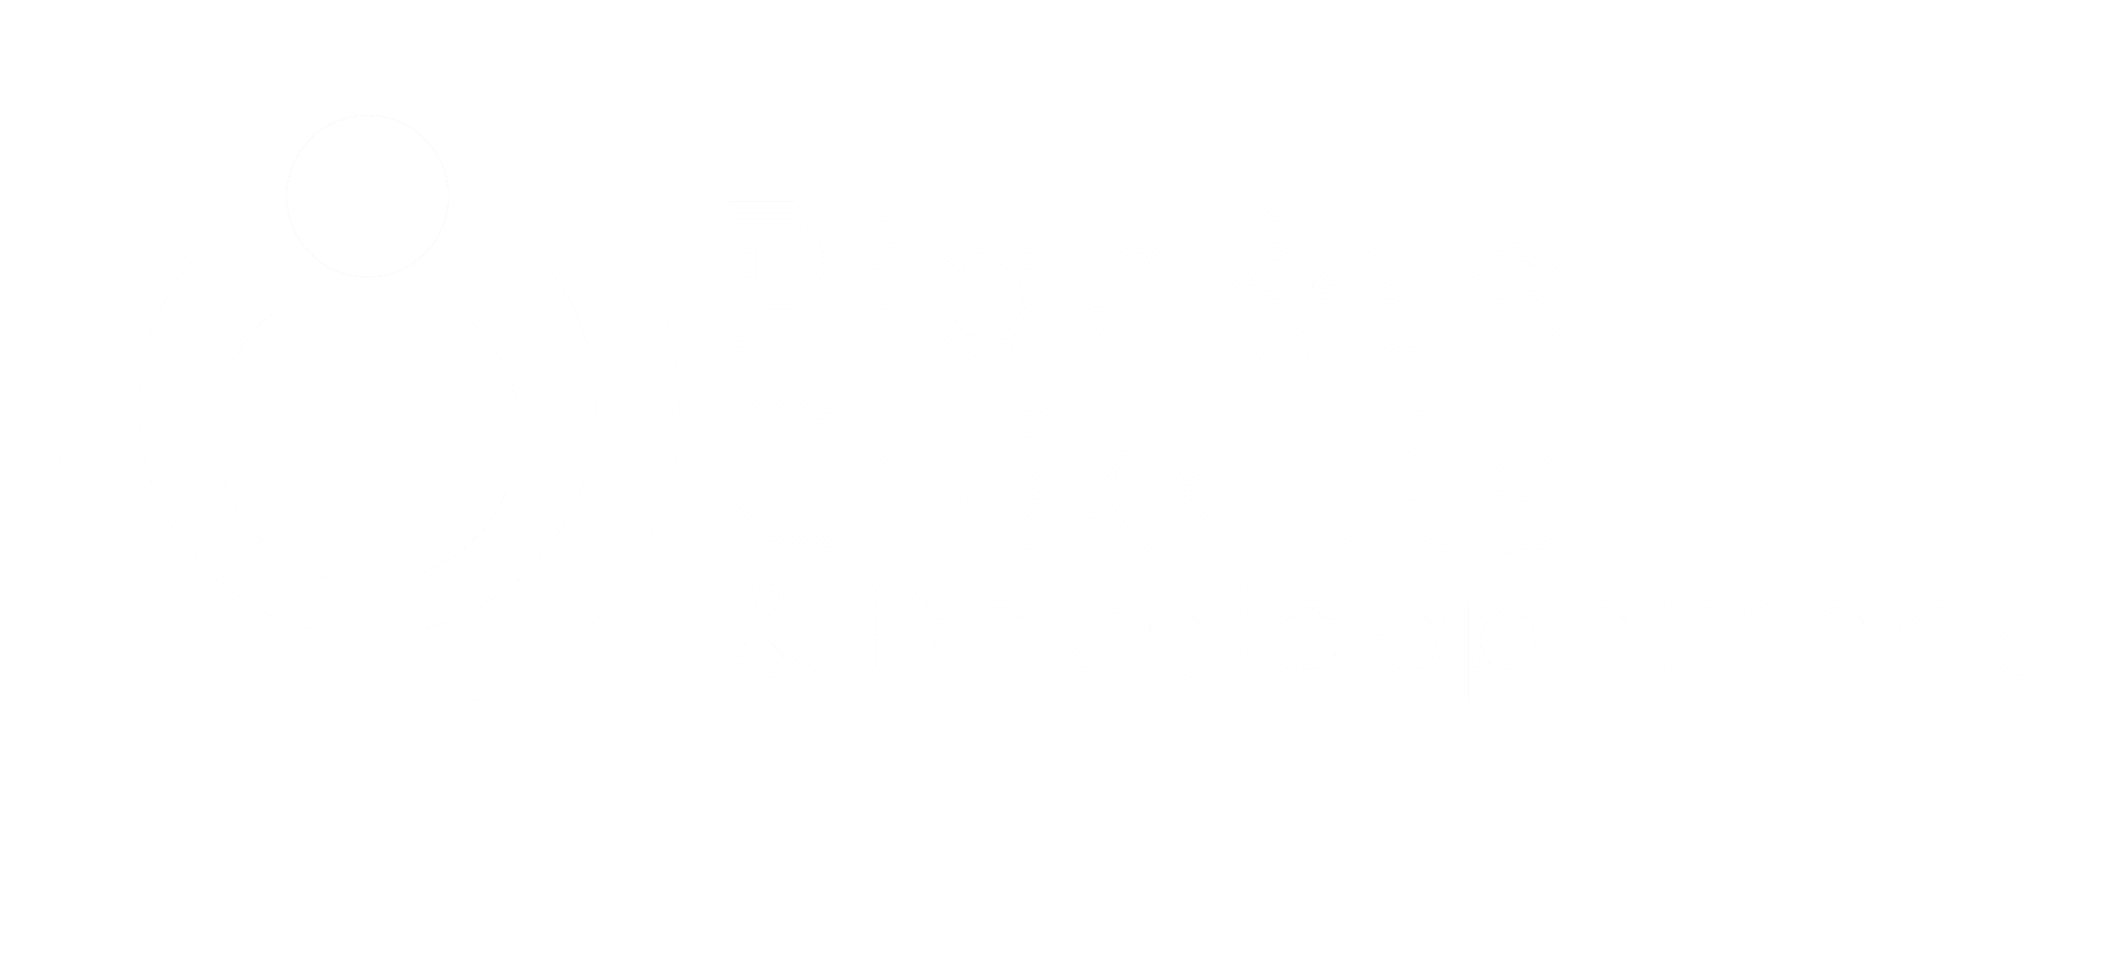 Planète Enfants & Développement accounts